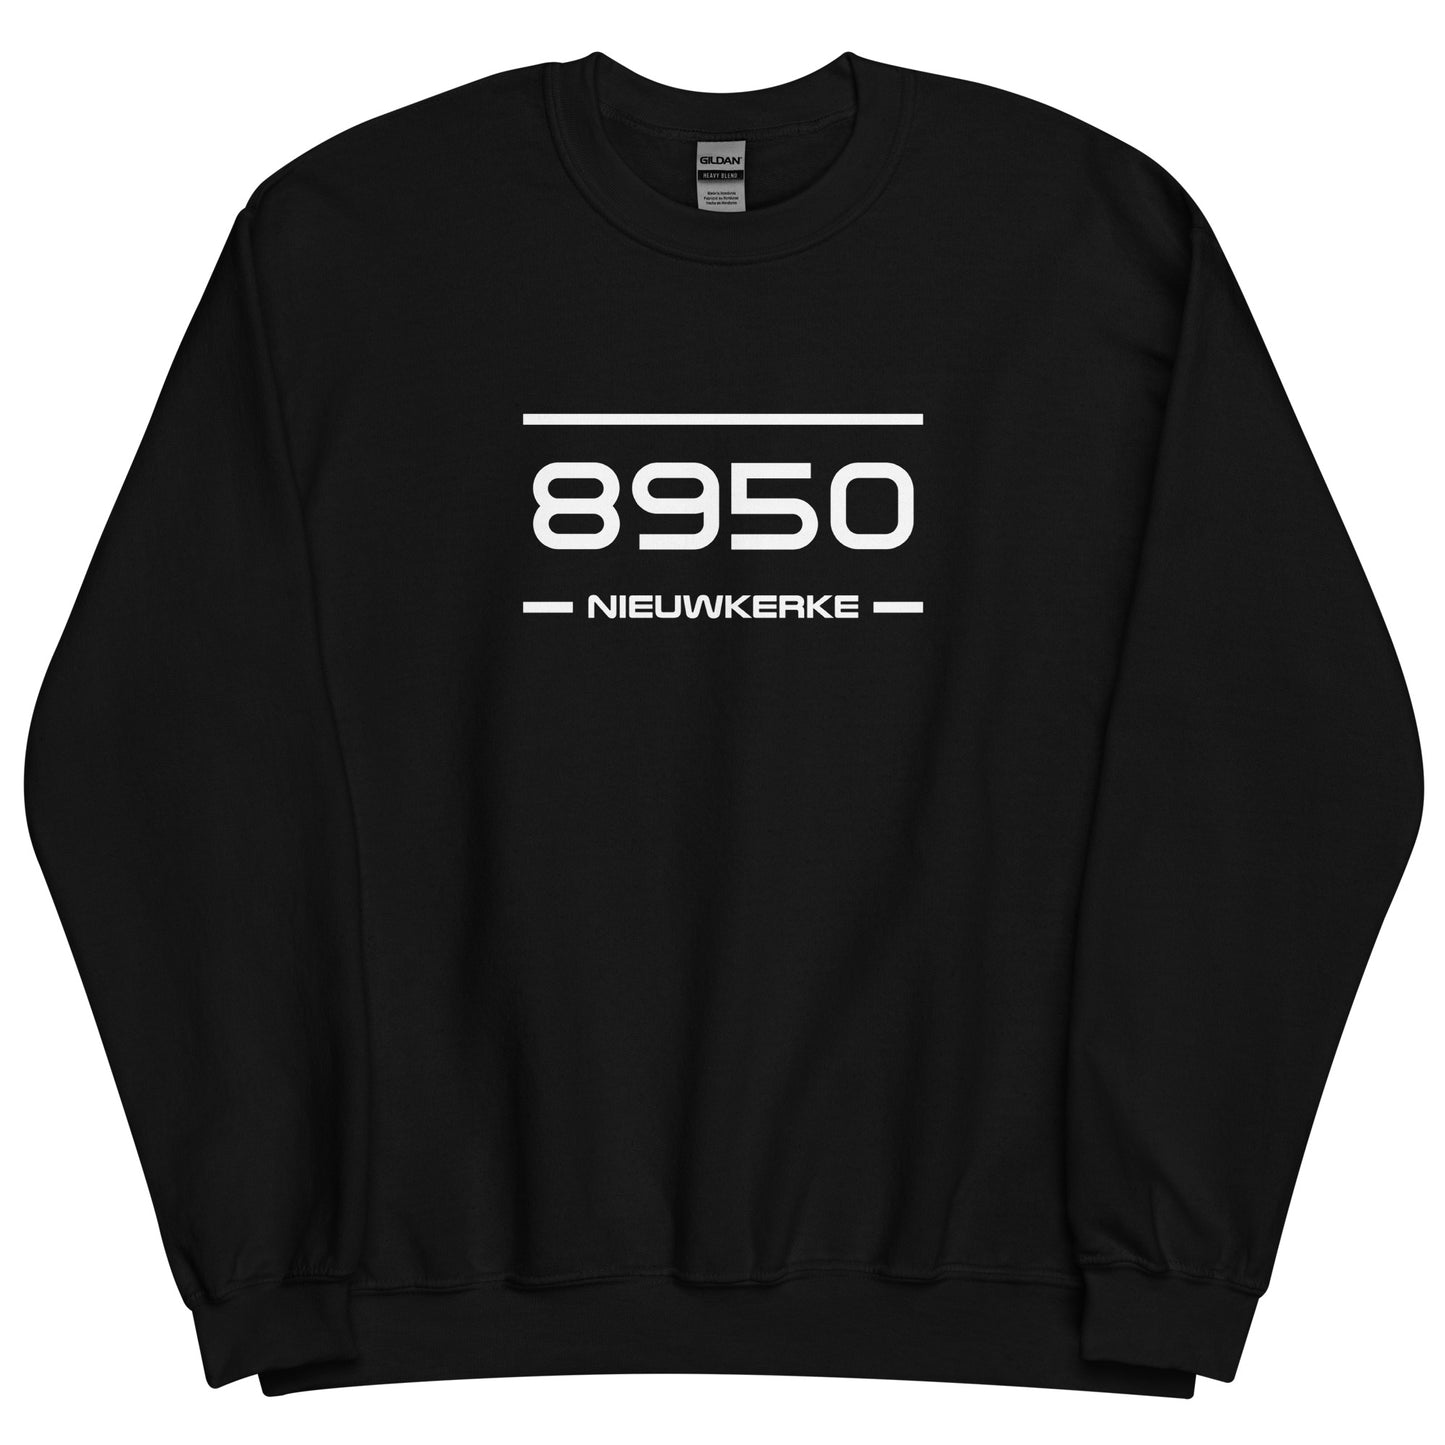 Sweater - 8950 - Nieuwkerke (M/V)